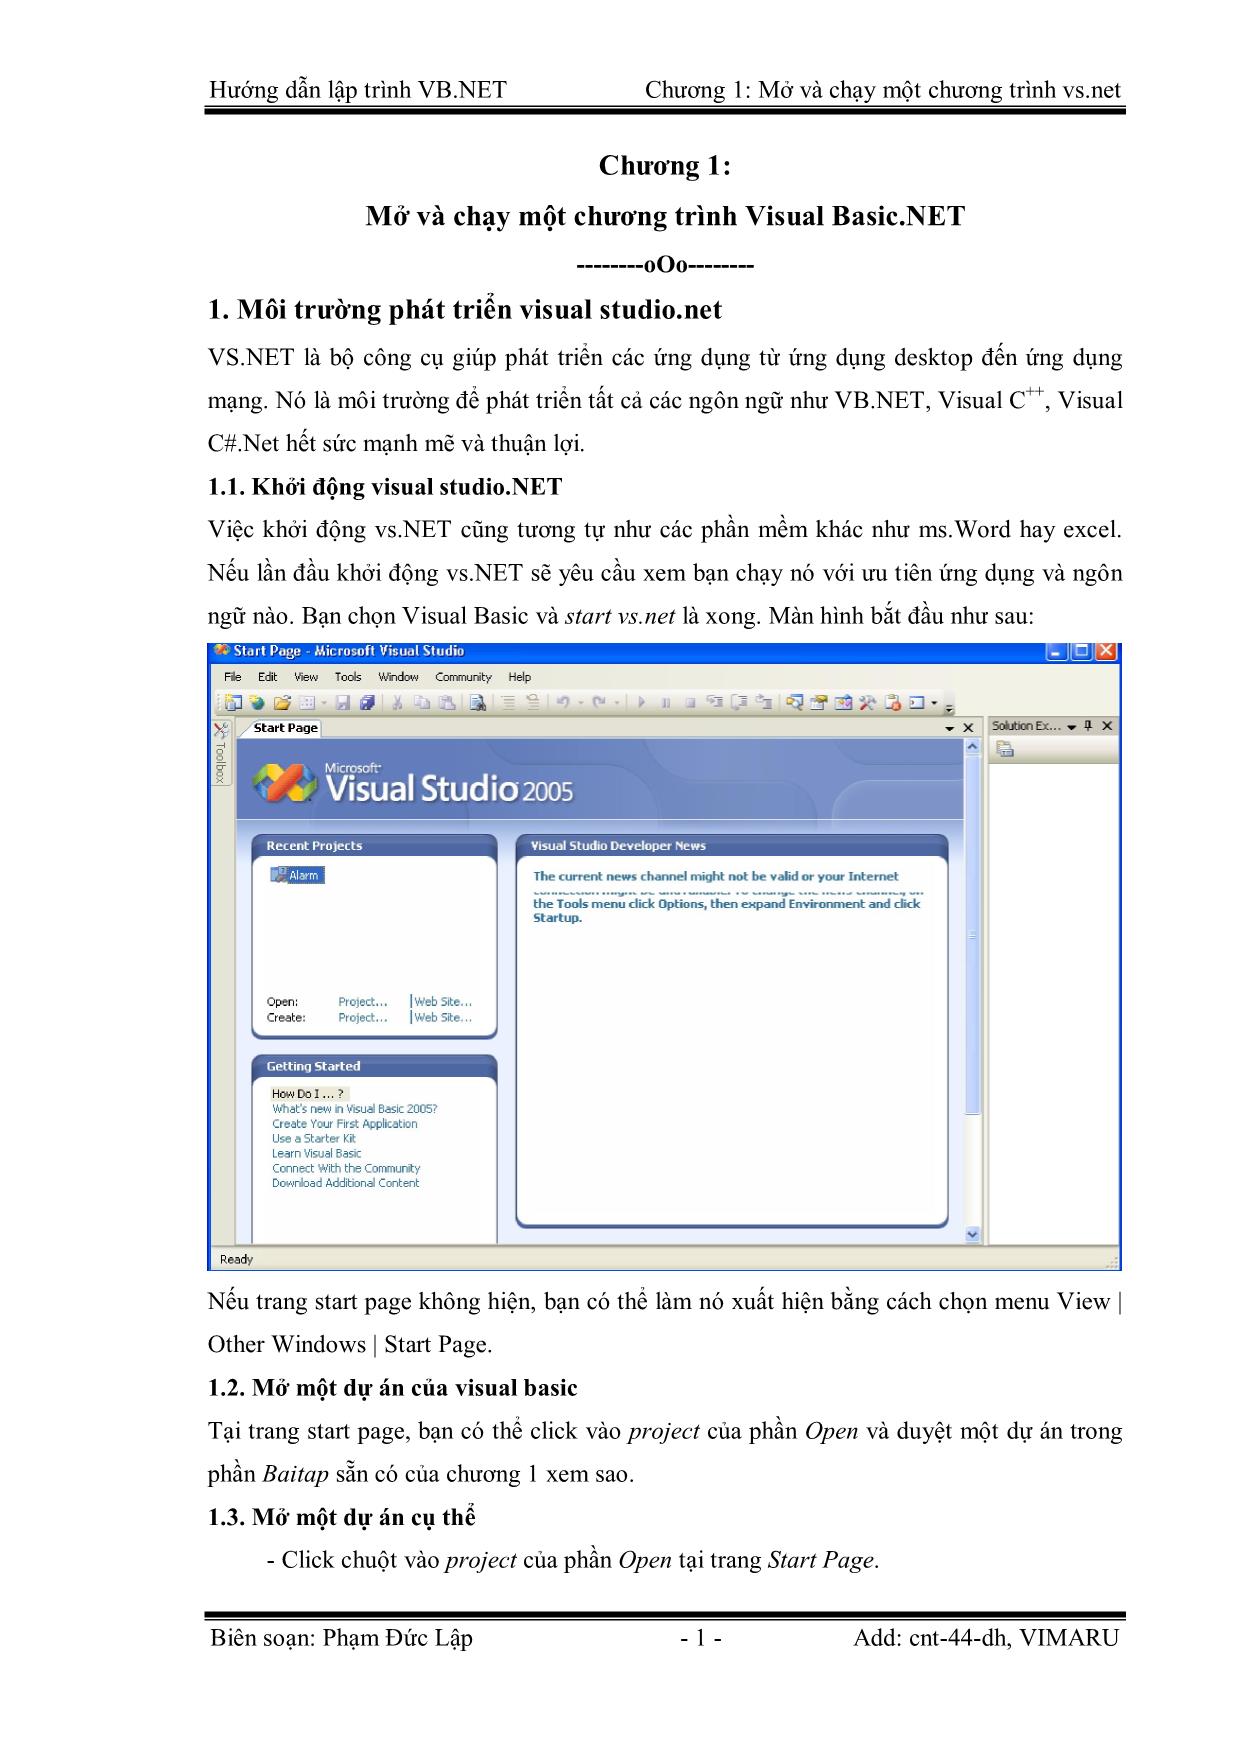 Giáo trình Hướng dẫn lập trình VB.NET - Chương 1: Mở và chạy một chương trình Visual Basic.NET - Phạm Đức Lập trang 1